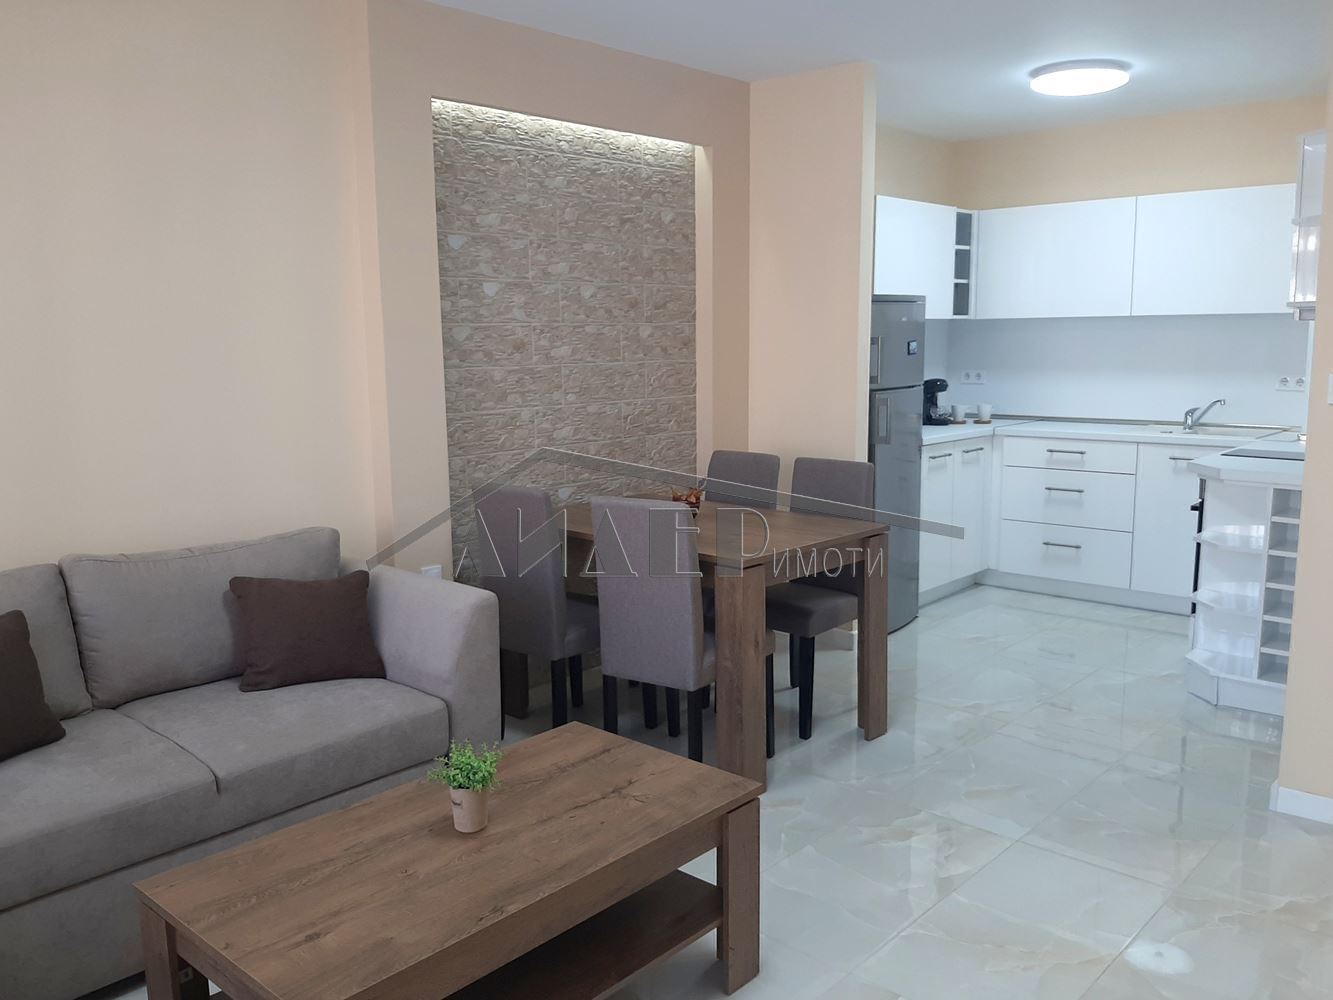 Двустаен апартамент  в  Пловдив за 650  лв - Отдава под наем 2-стаен